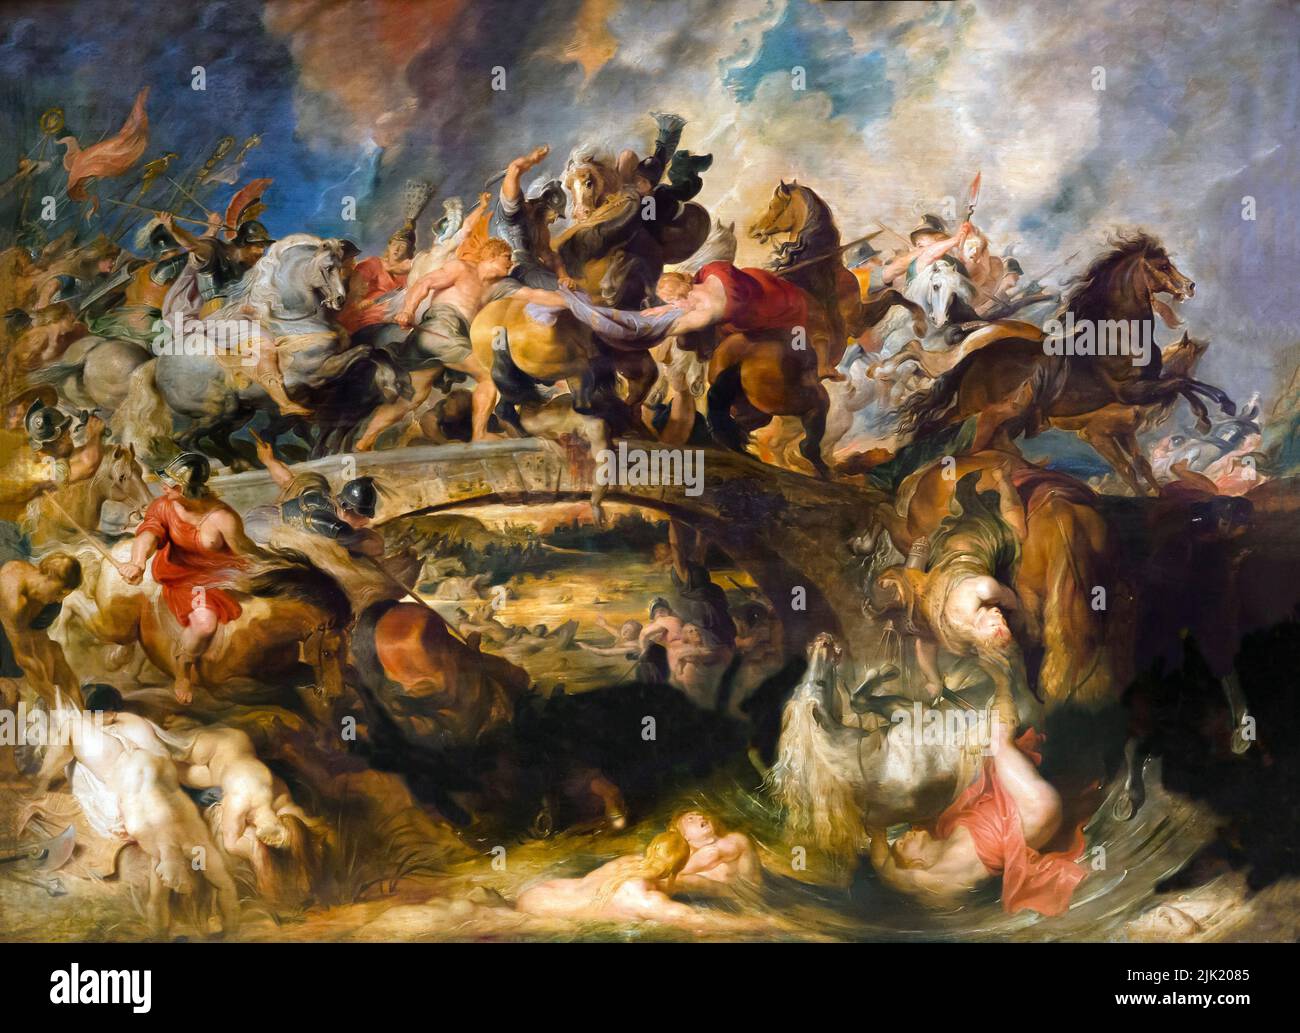 Die Schlacht der Amazonen, Peter Paul Rubens, 1618, Alte Pinakothek, München, Deutschland Stockfoto